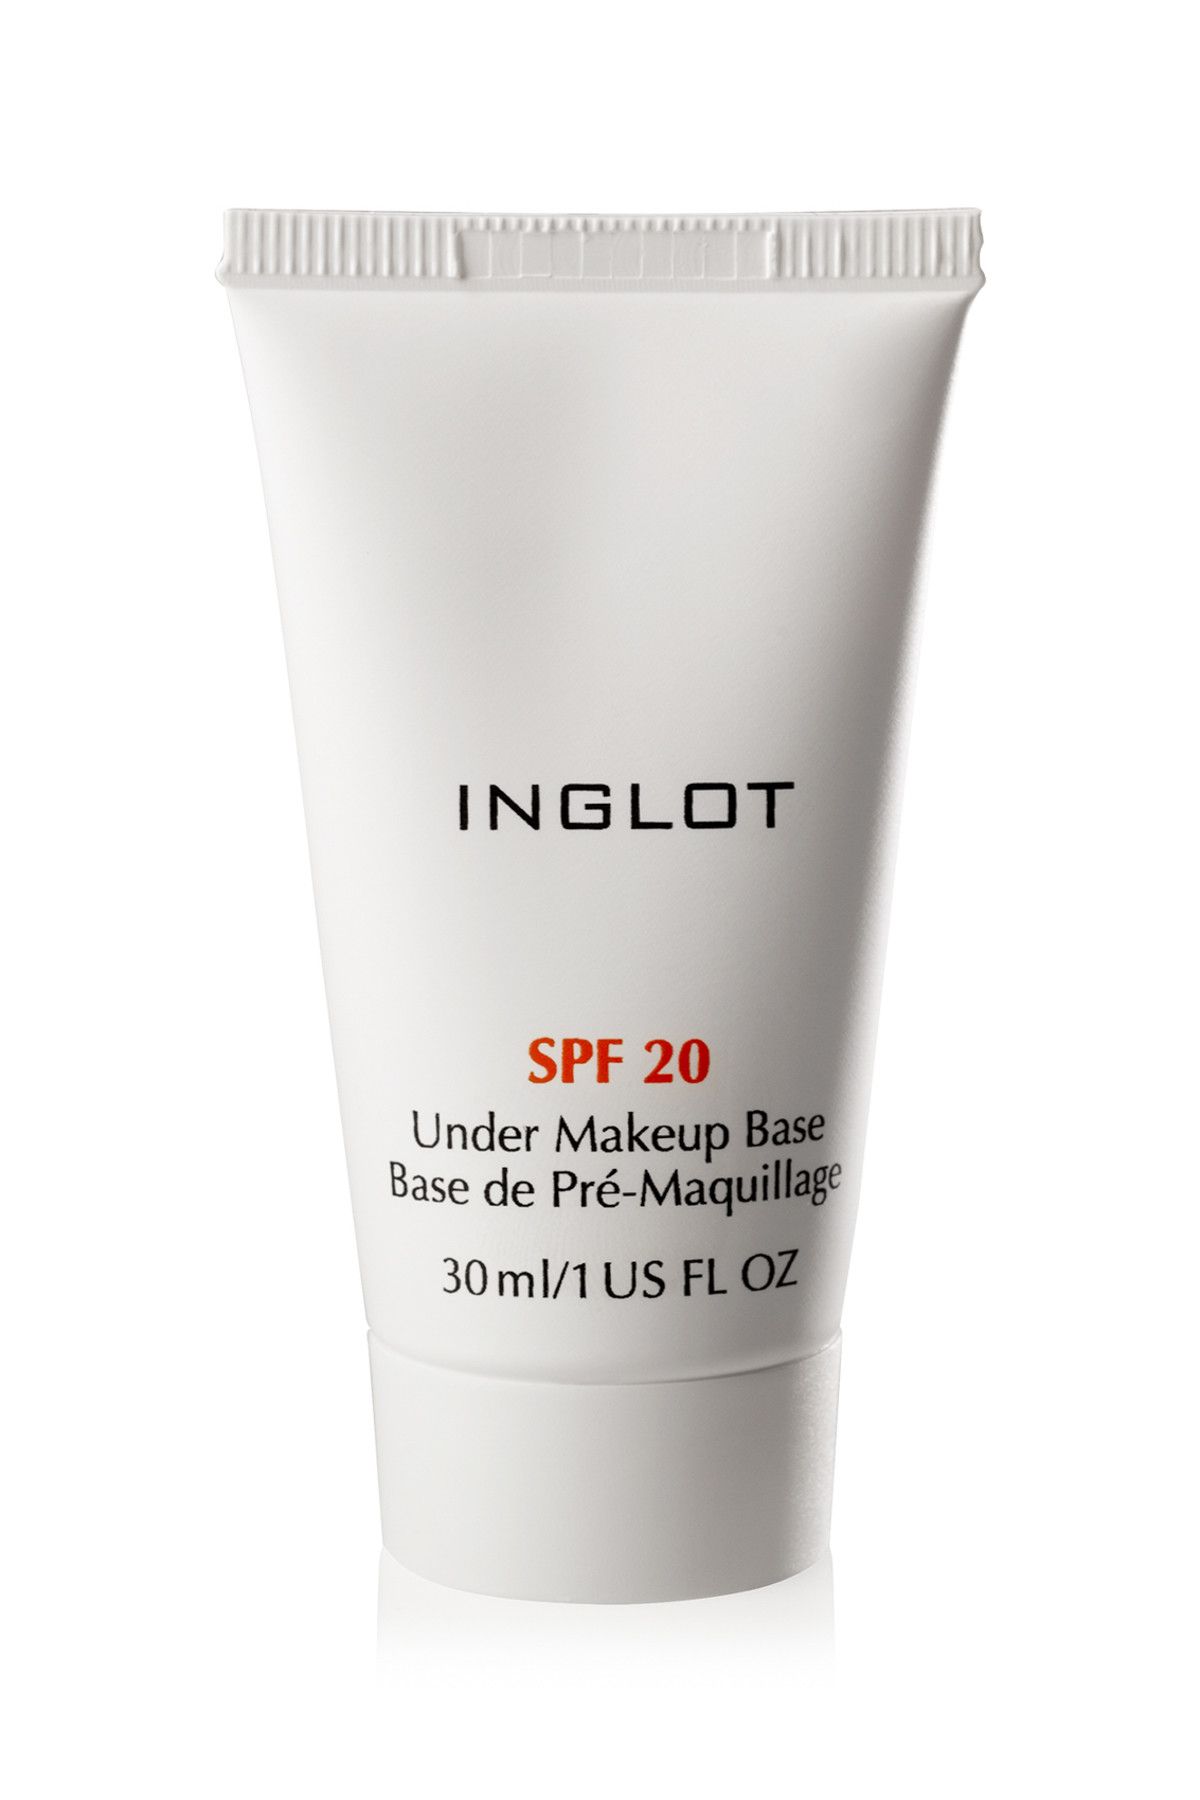 Inglot Güneş Koruyuculu Makyaj Bazı - Under Makeup Base SPF 20 30 ml 5901905090019